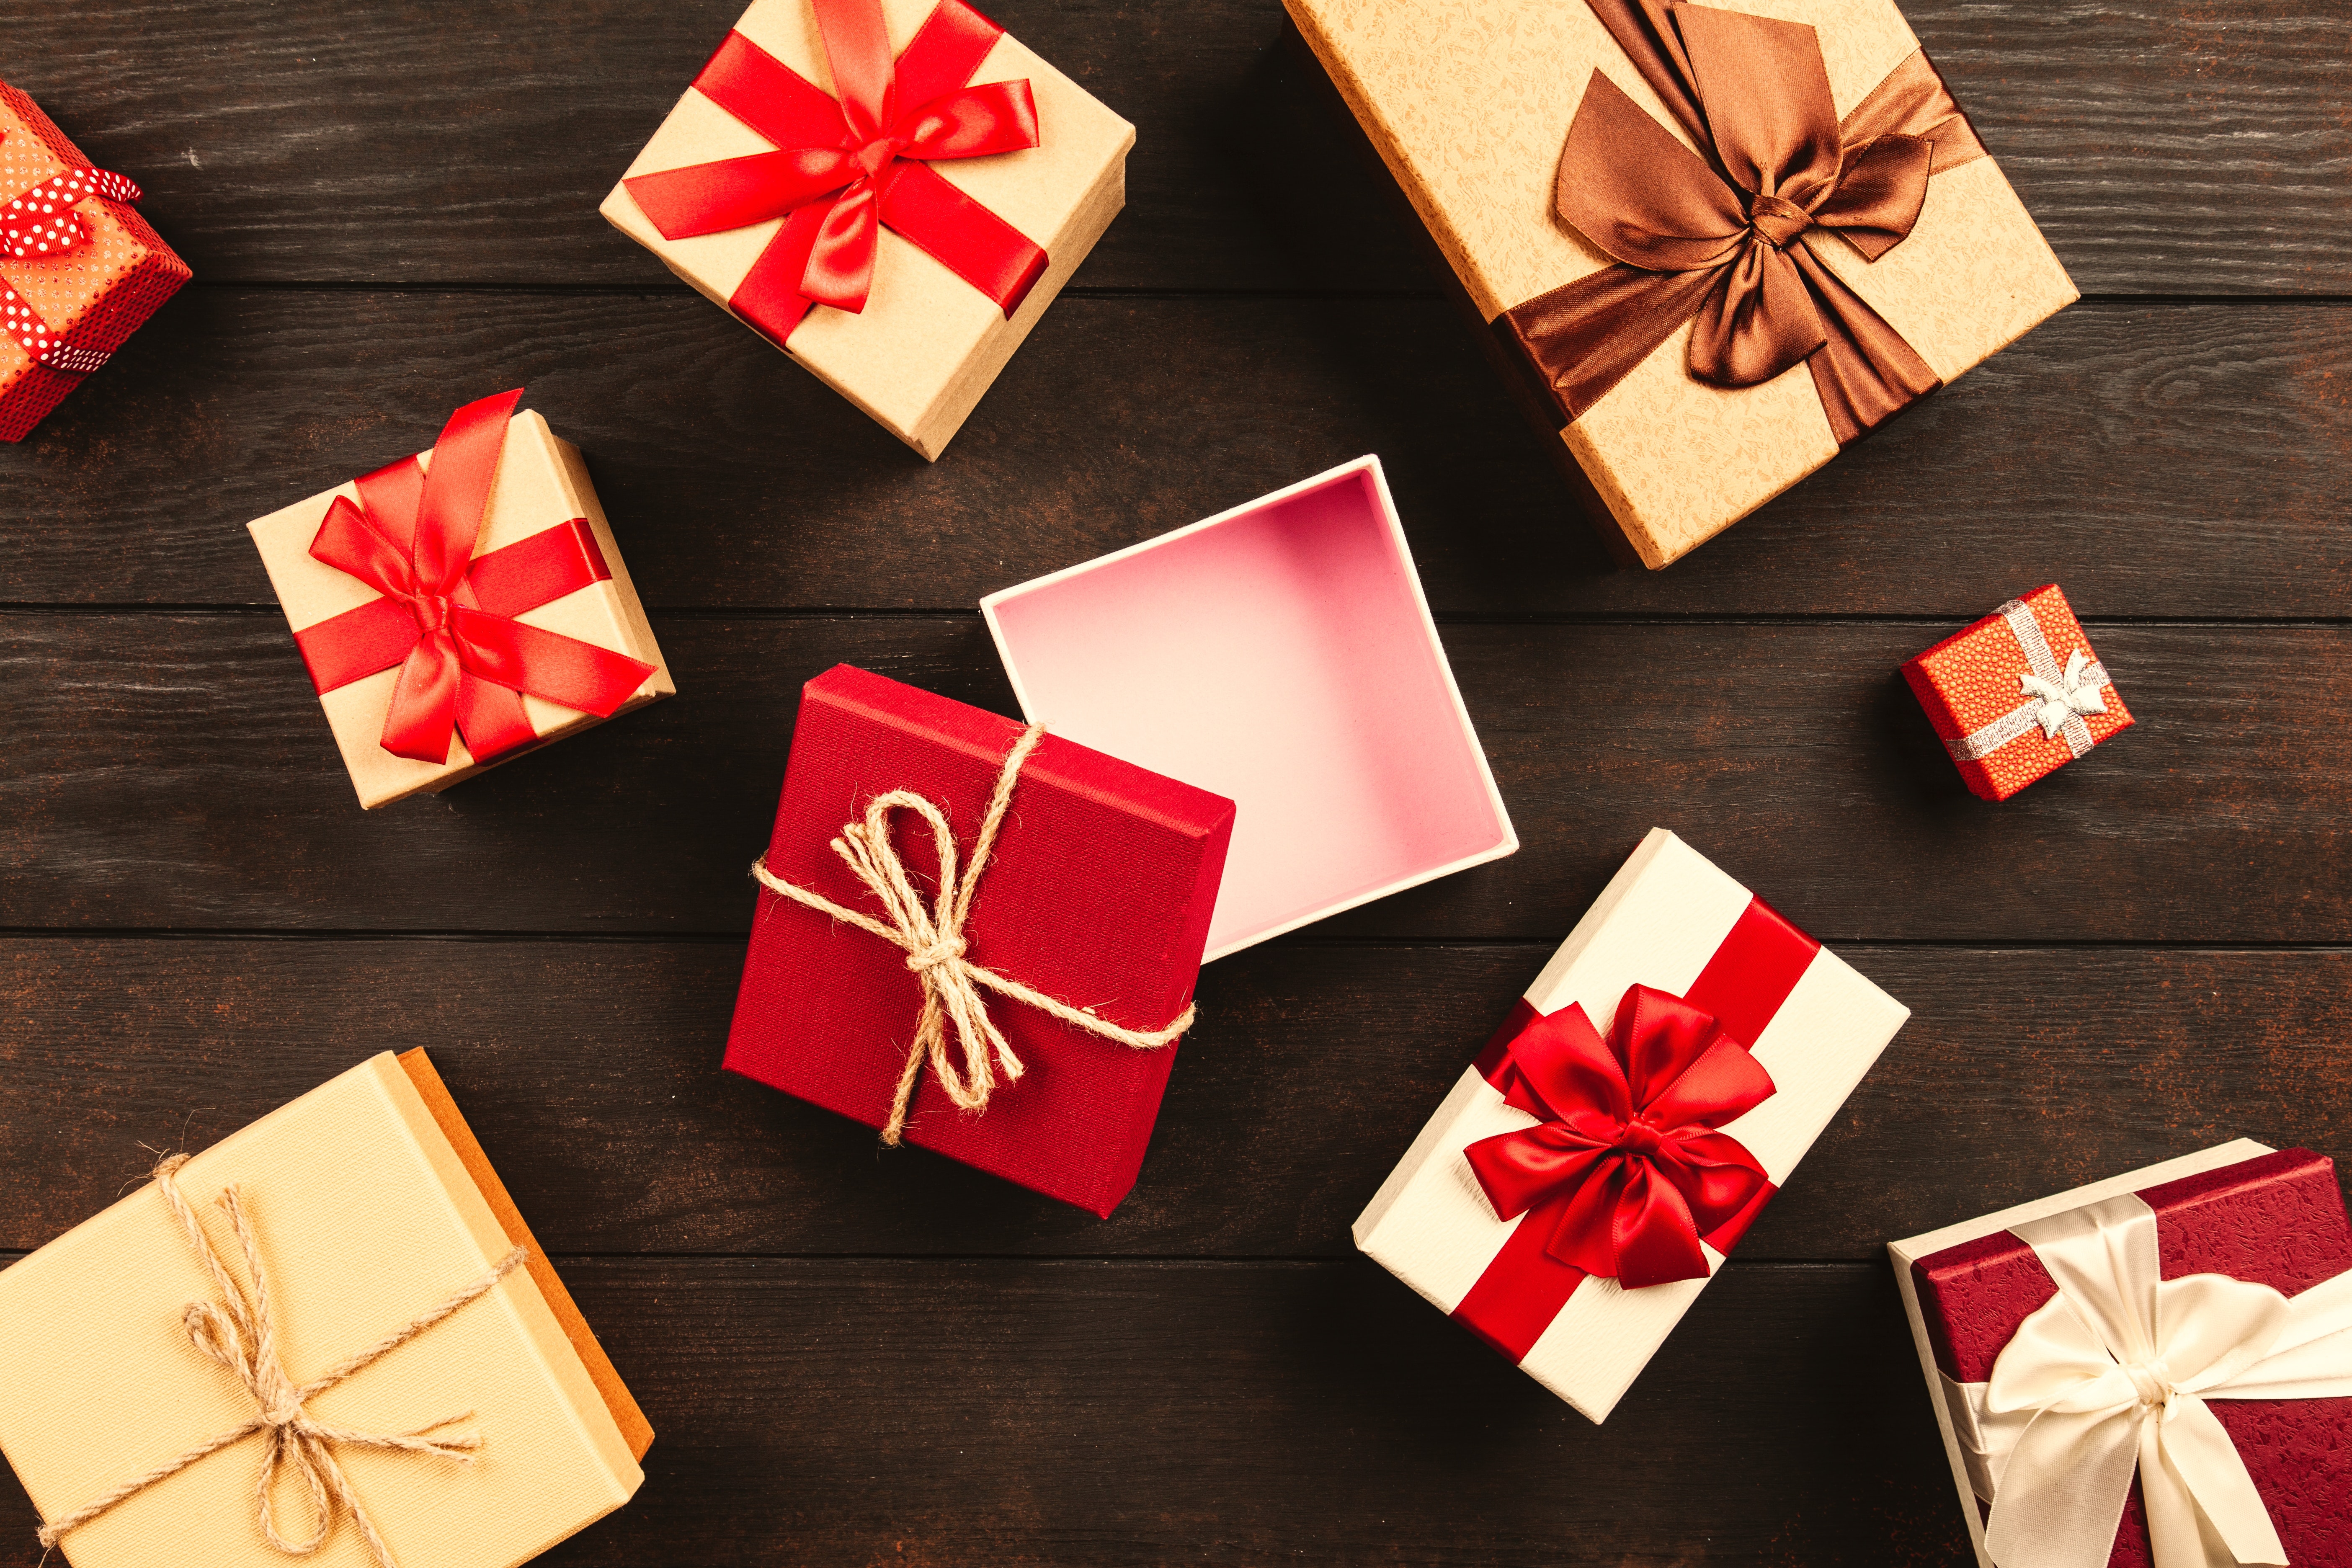 5 Festive Gift Ideas for Under $5